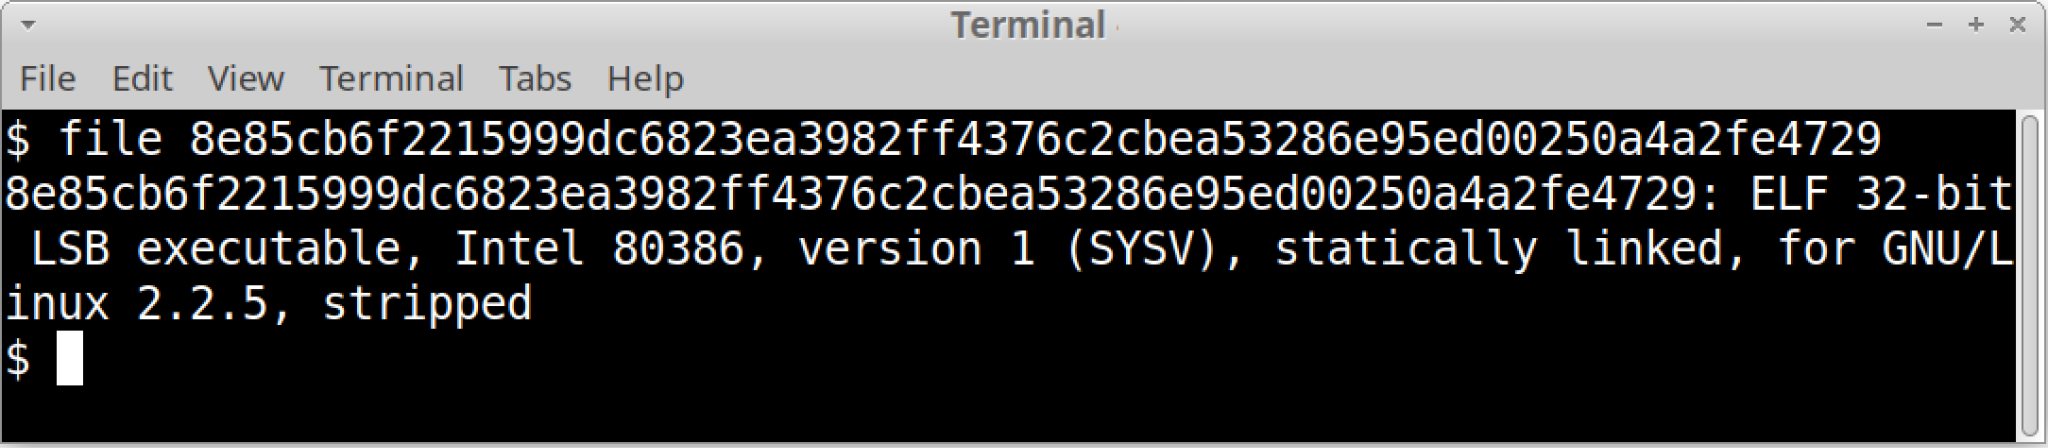 画像 2 は Linux ターミナルのスクリーンショット。このコードはターミナルにストリップ済みバイナリーであることを表示しています。4 行目に「stripped (ストリップ済み)」とあります。